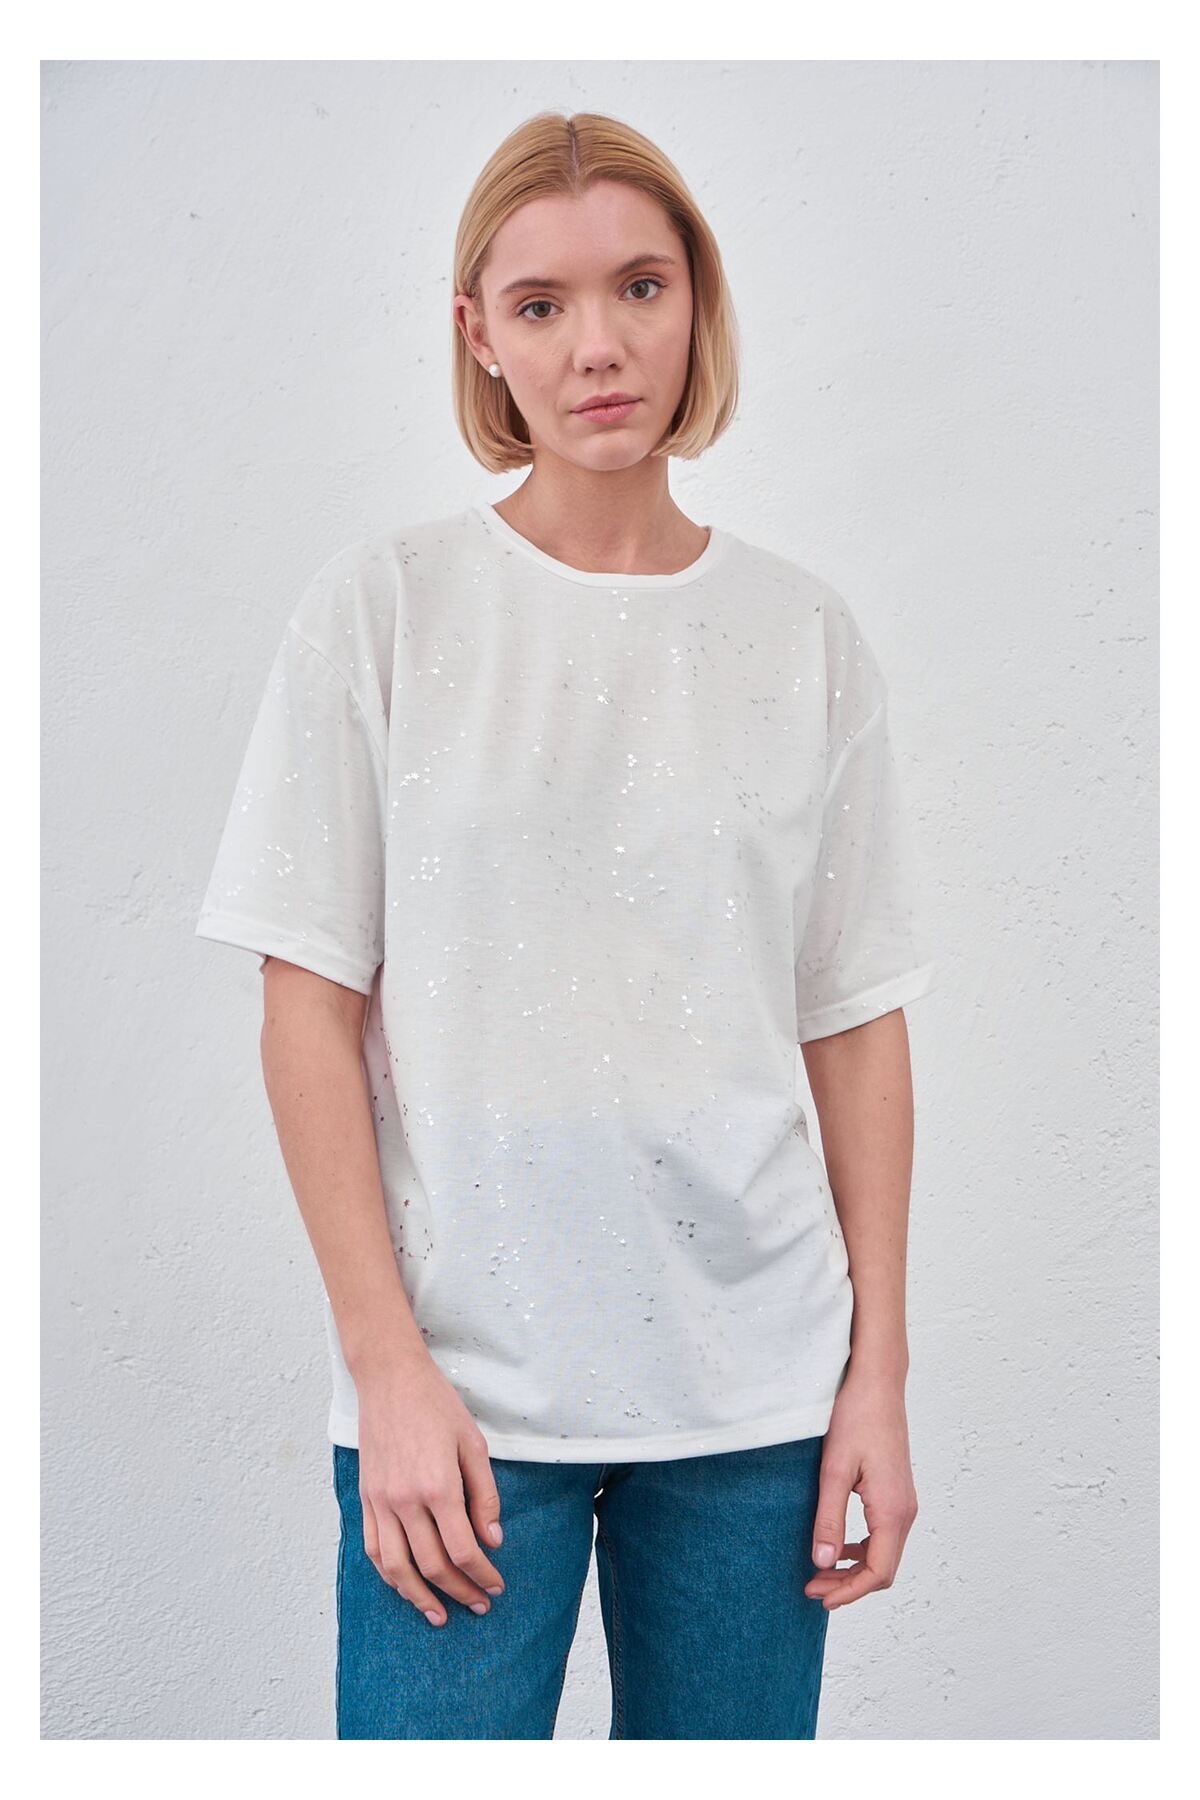 Tiffany Tomato Simli Yıldız Baskılı T-shirt-Beyaz